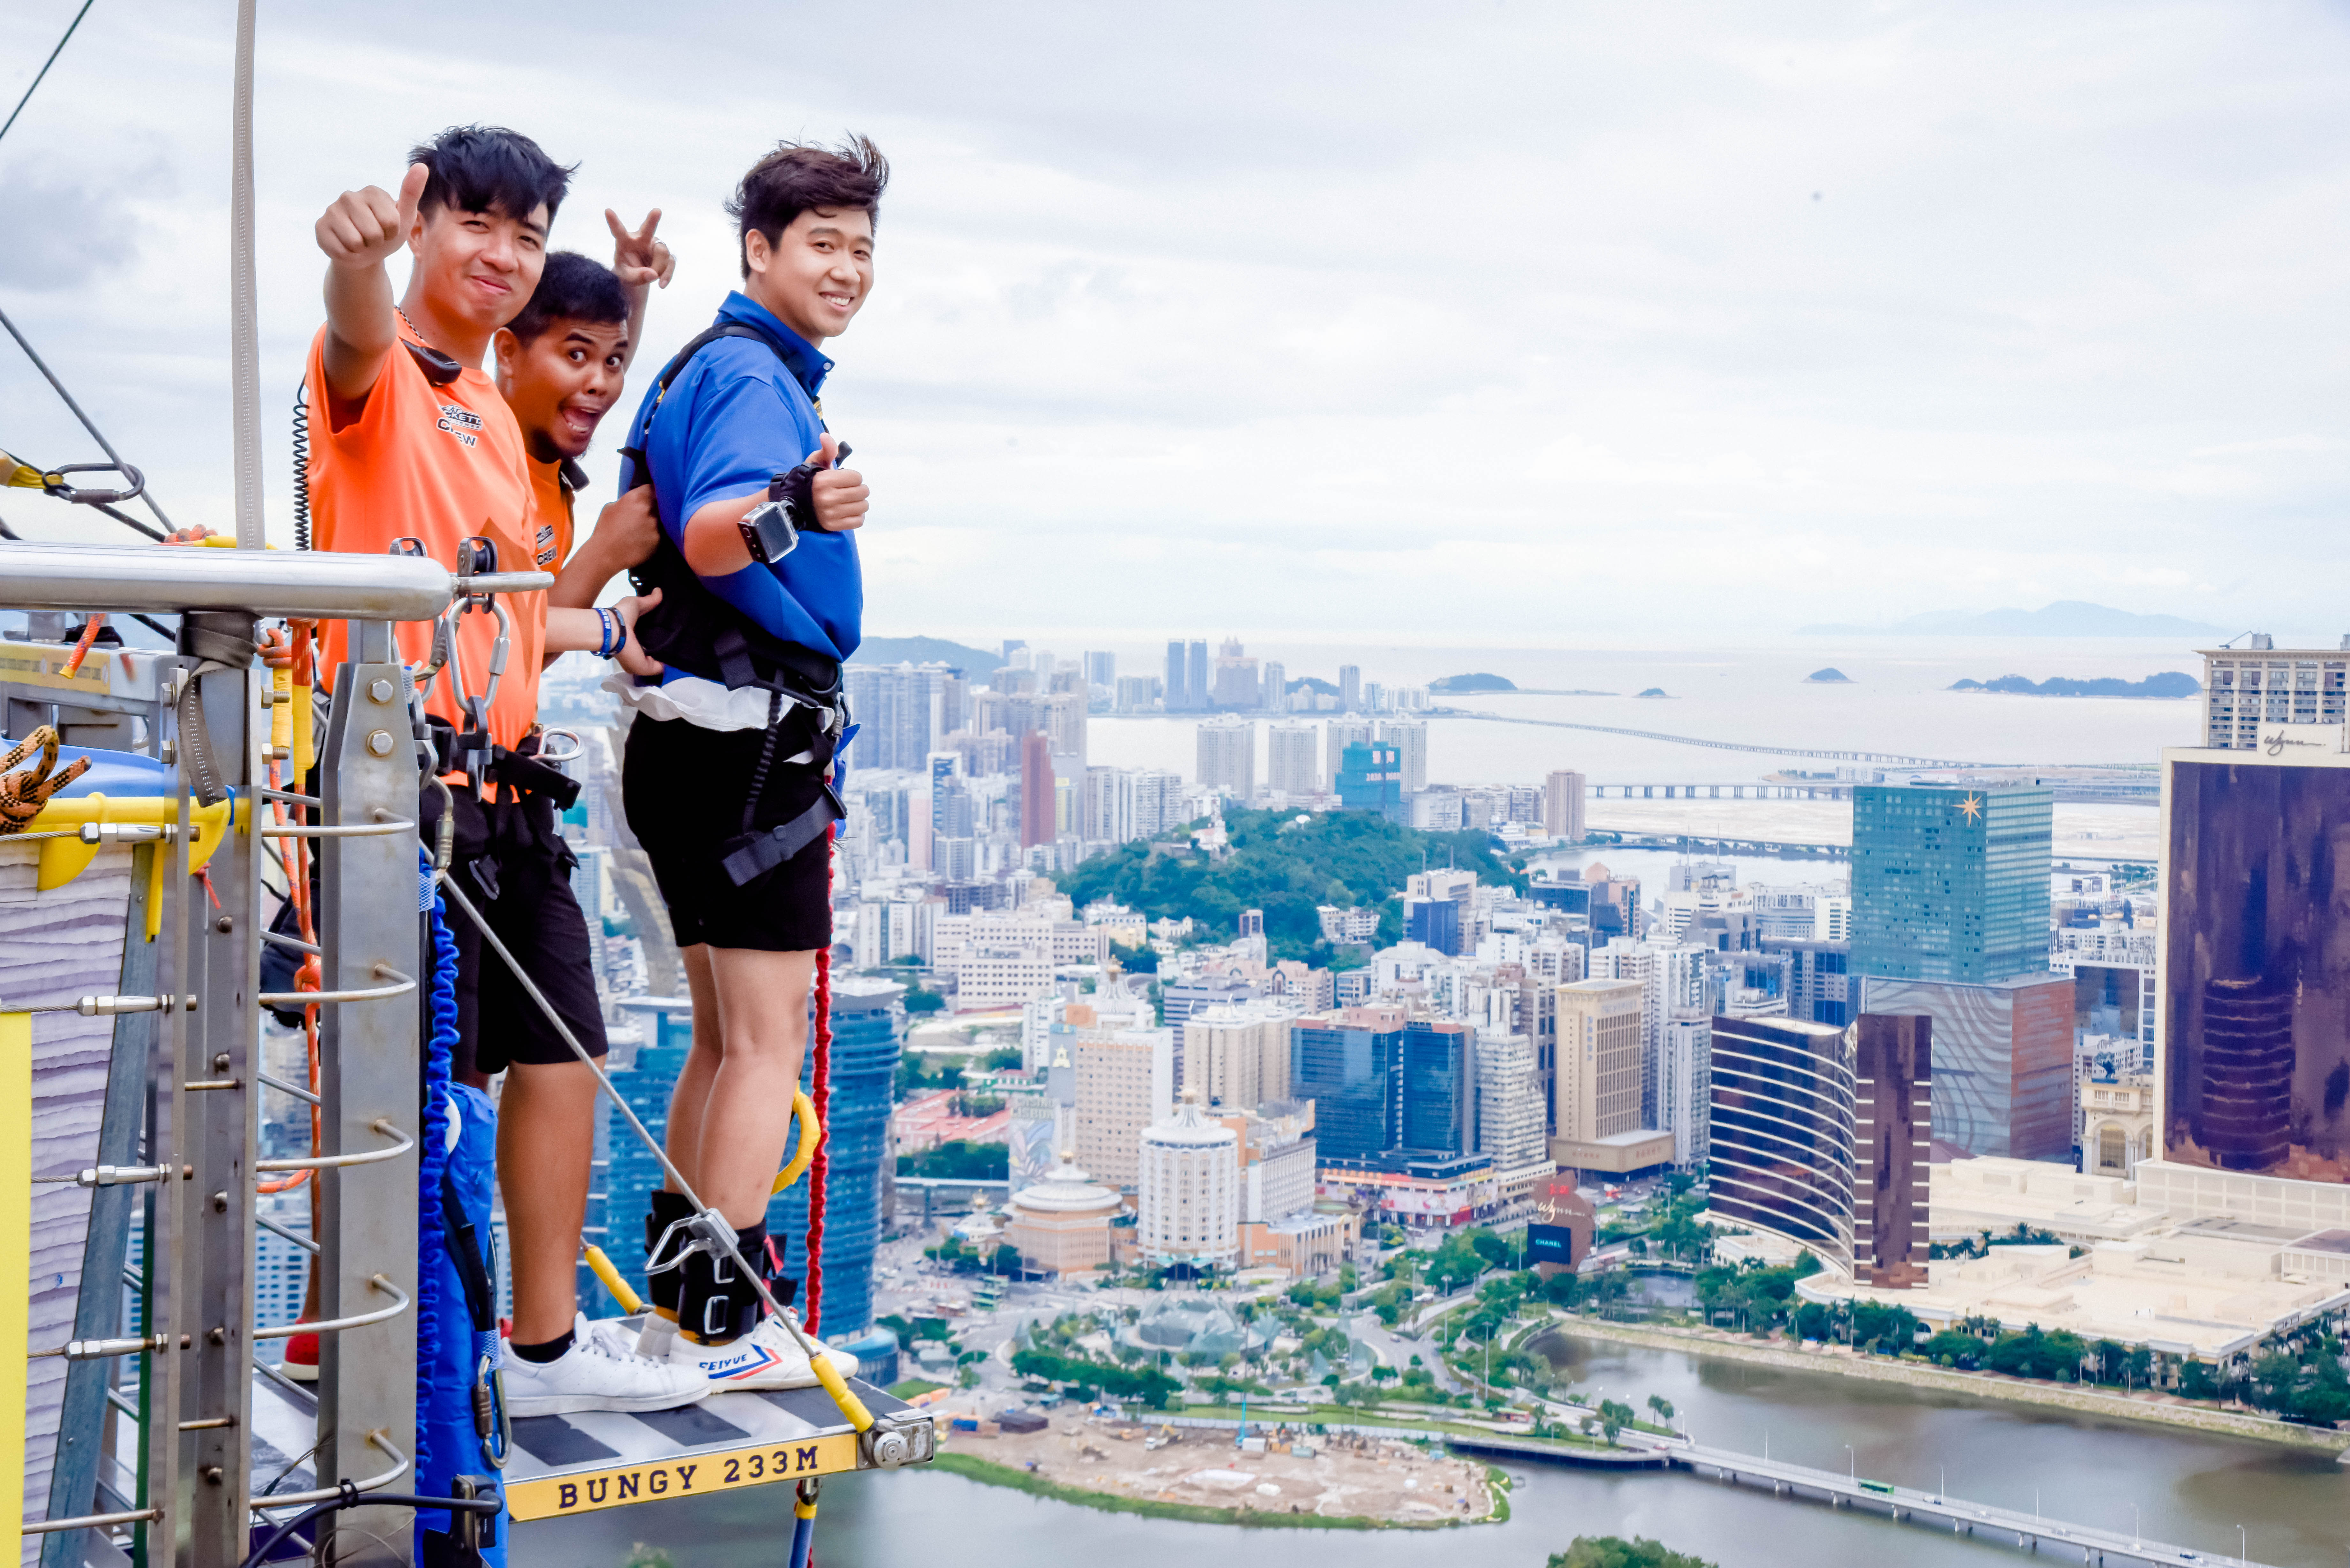 在澳门旅游塔挑战全世界最高的城市商业蹦极,233米高堪比跳楼!